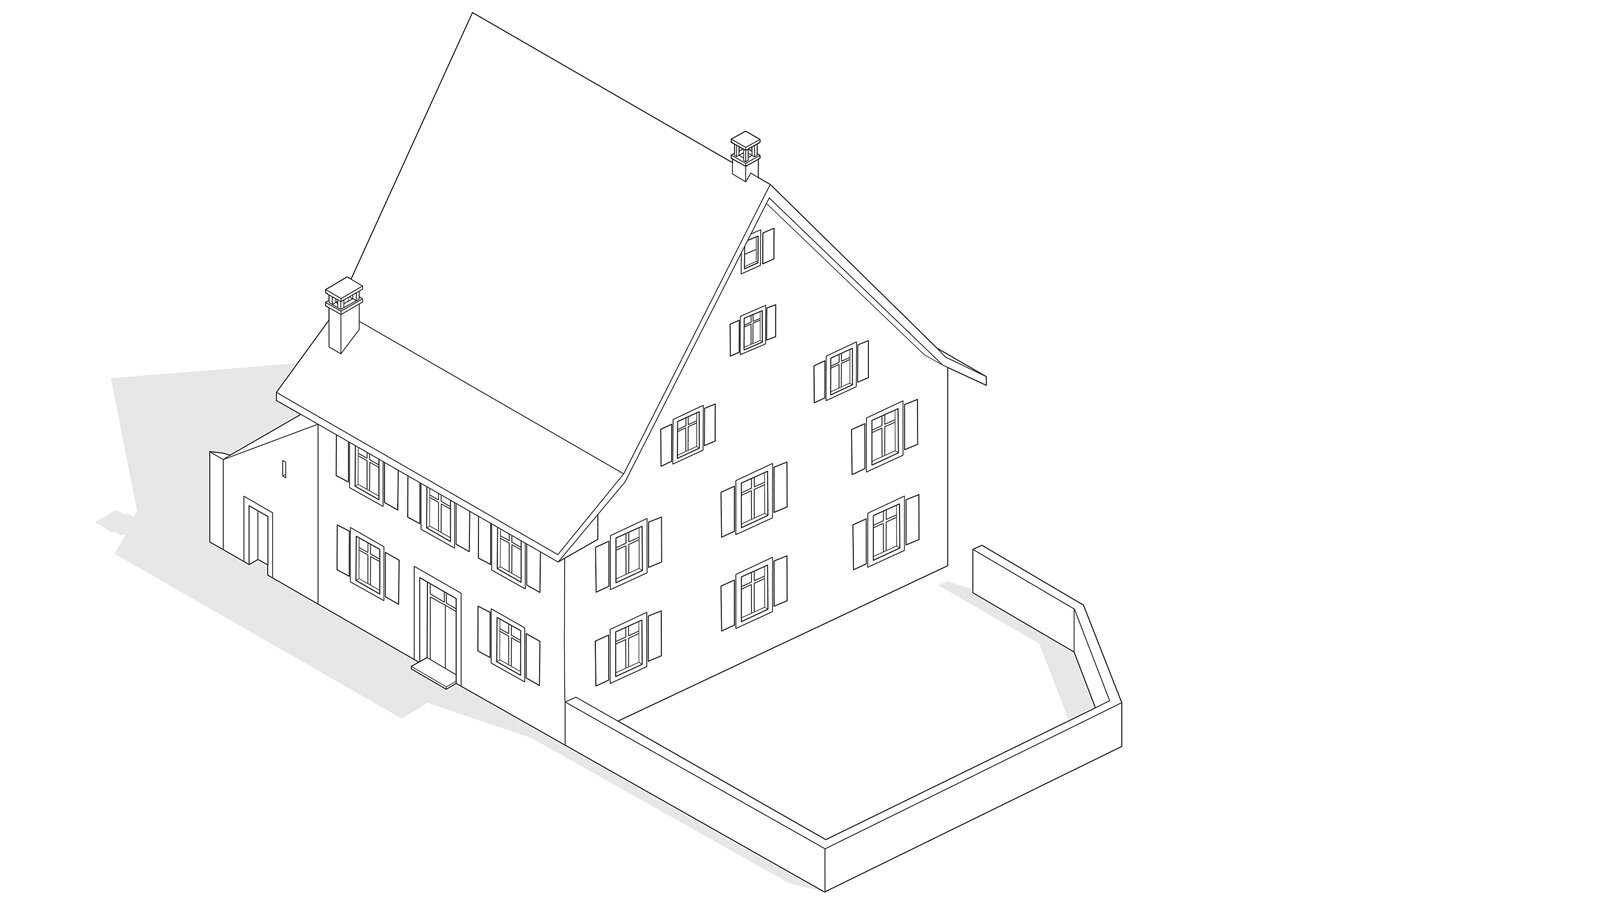 oculus-illustration-architektur-ausstellung-zeichnung-isometrie-wohnen-fischer-bauernwohnhaus